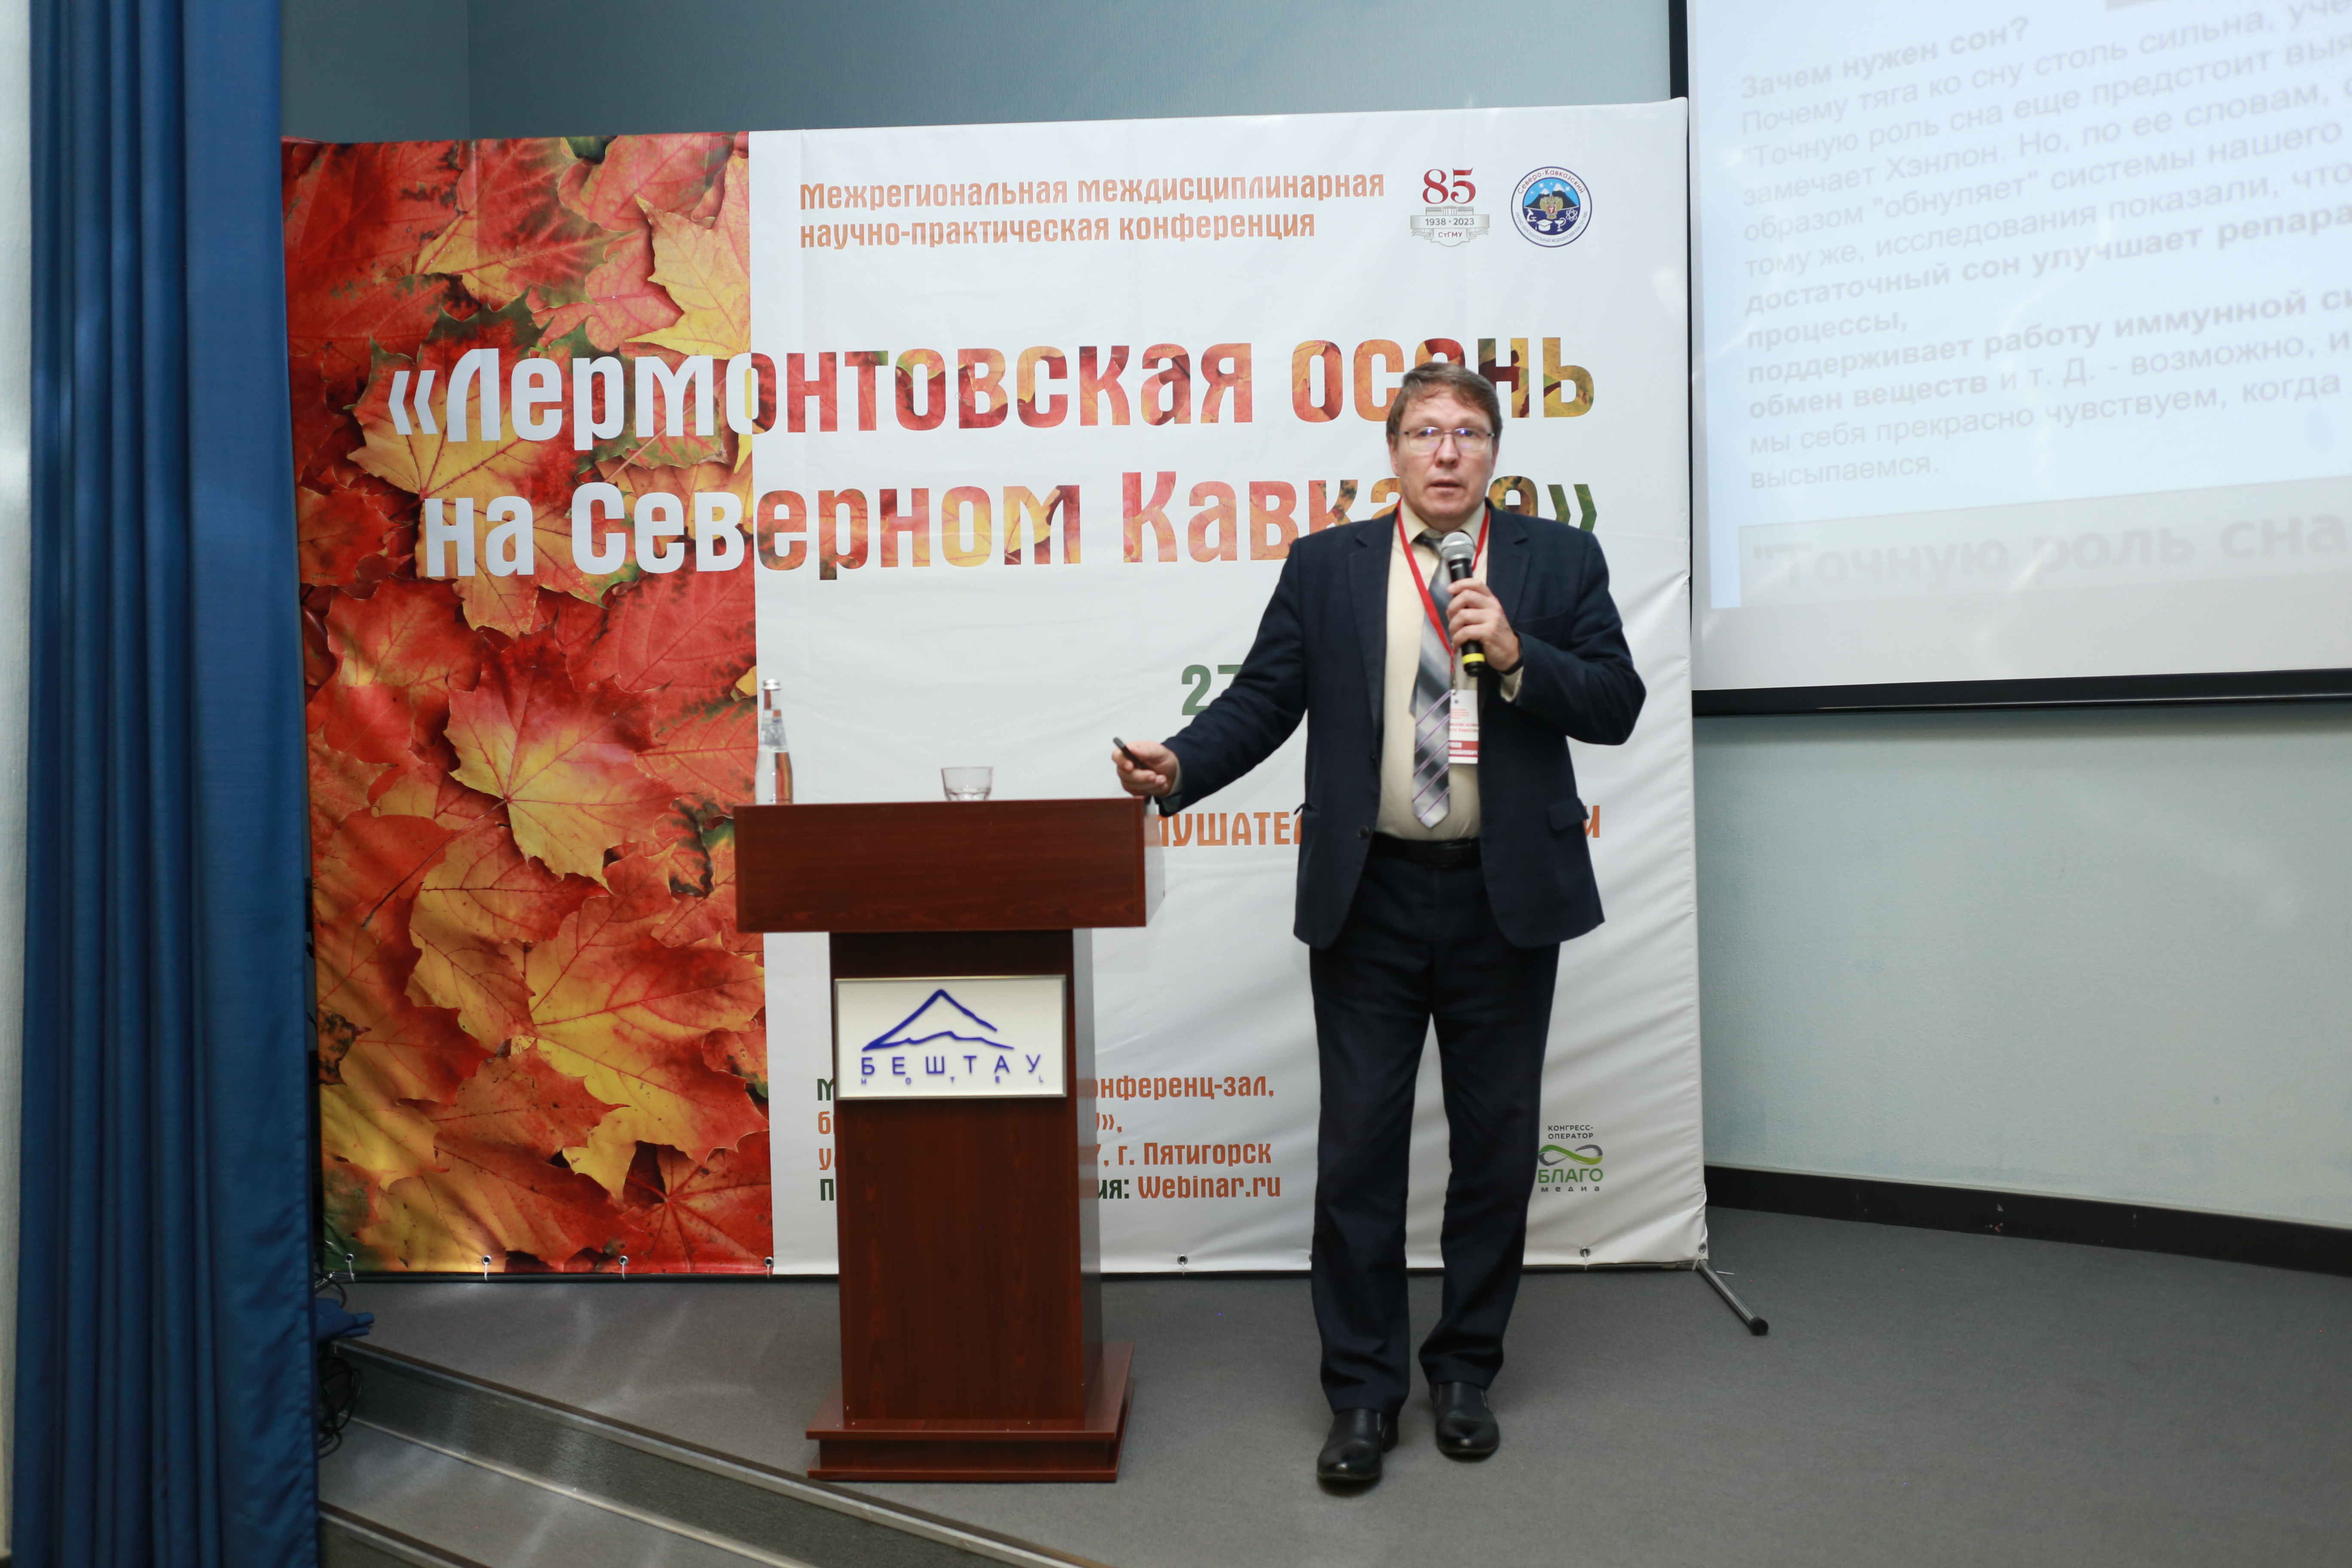 «Лермонтовская осень на Северном Кавказе» собрала более 550 врачей различных специальностей.